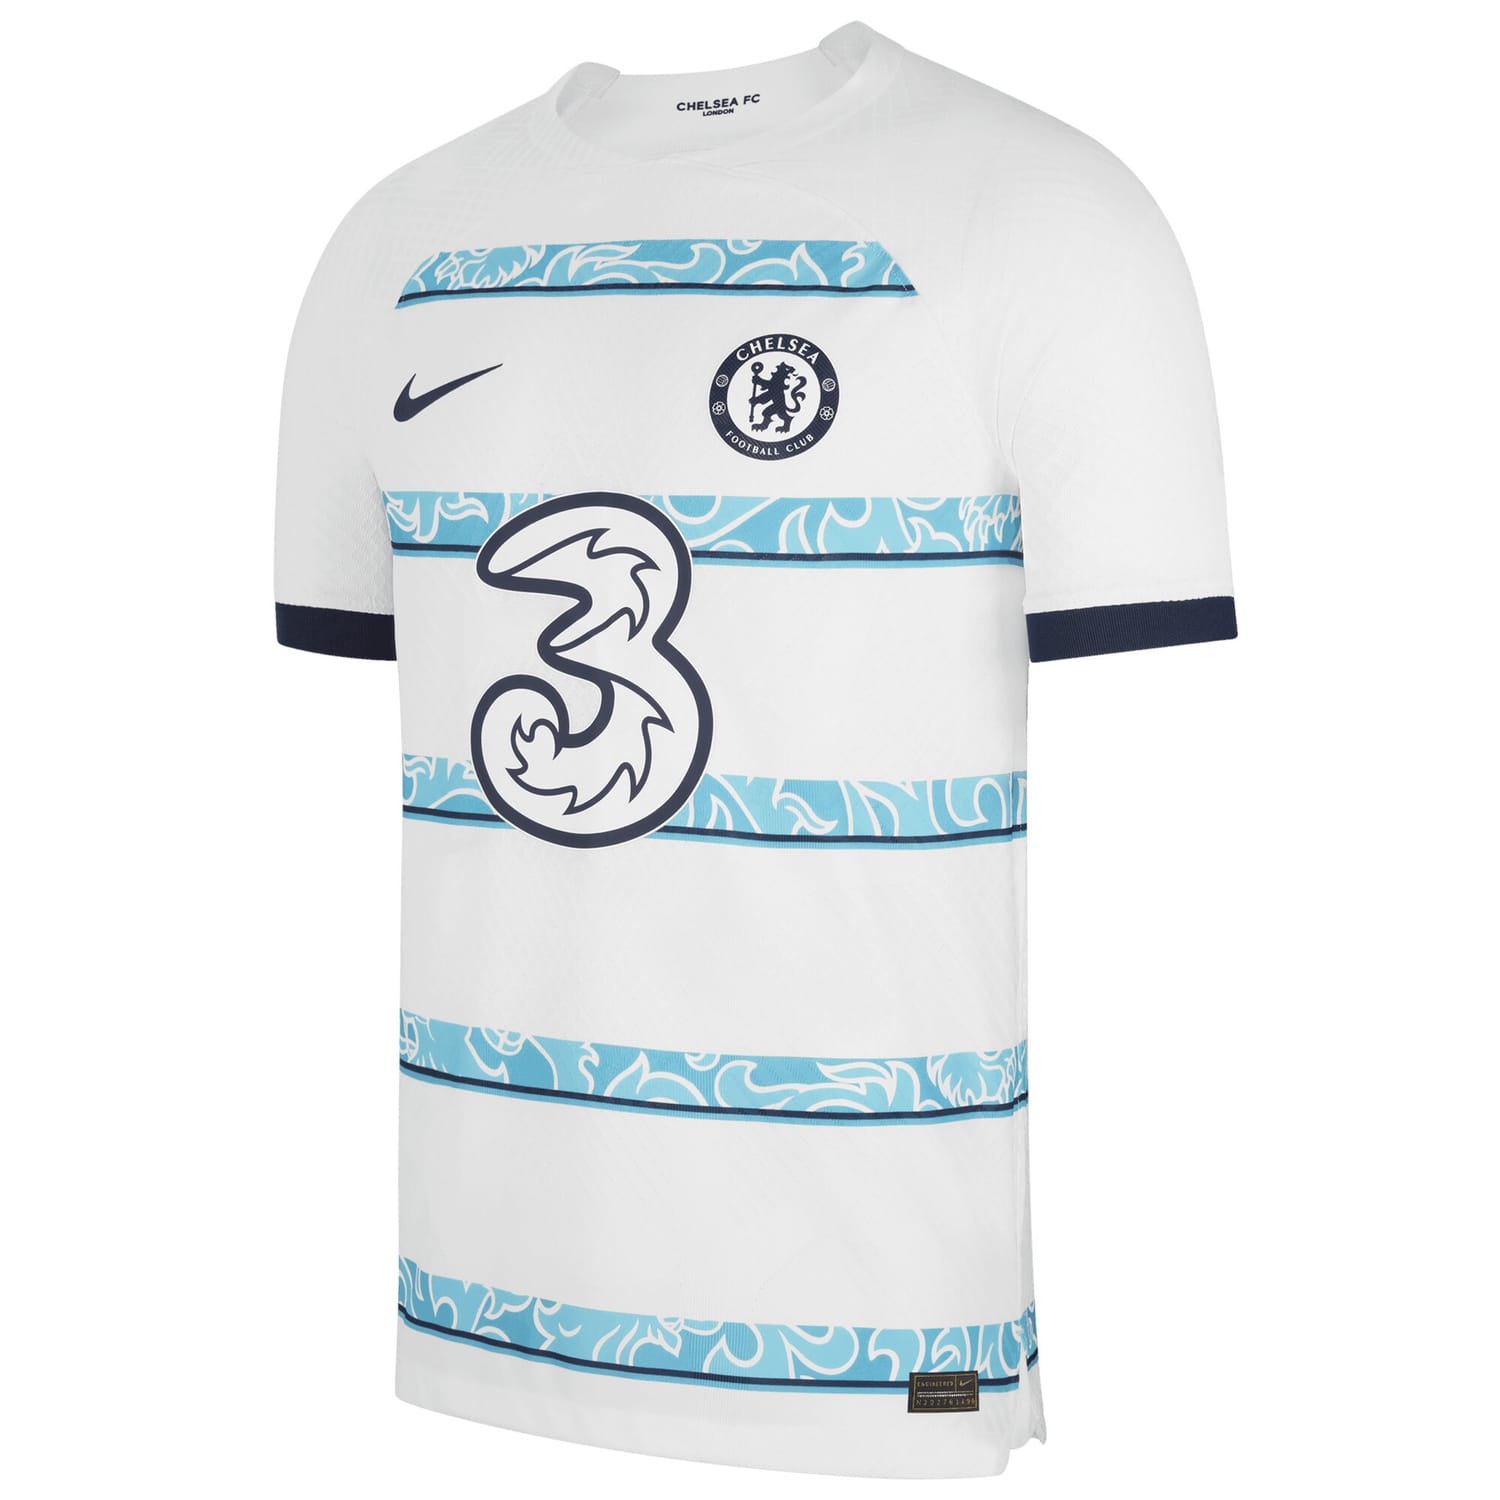 Premier League Chelsea Away Authentic Jersey Shirt 2022-23 player João Félix 11 printing for Men